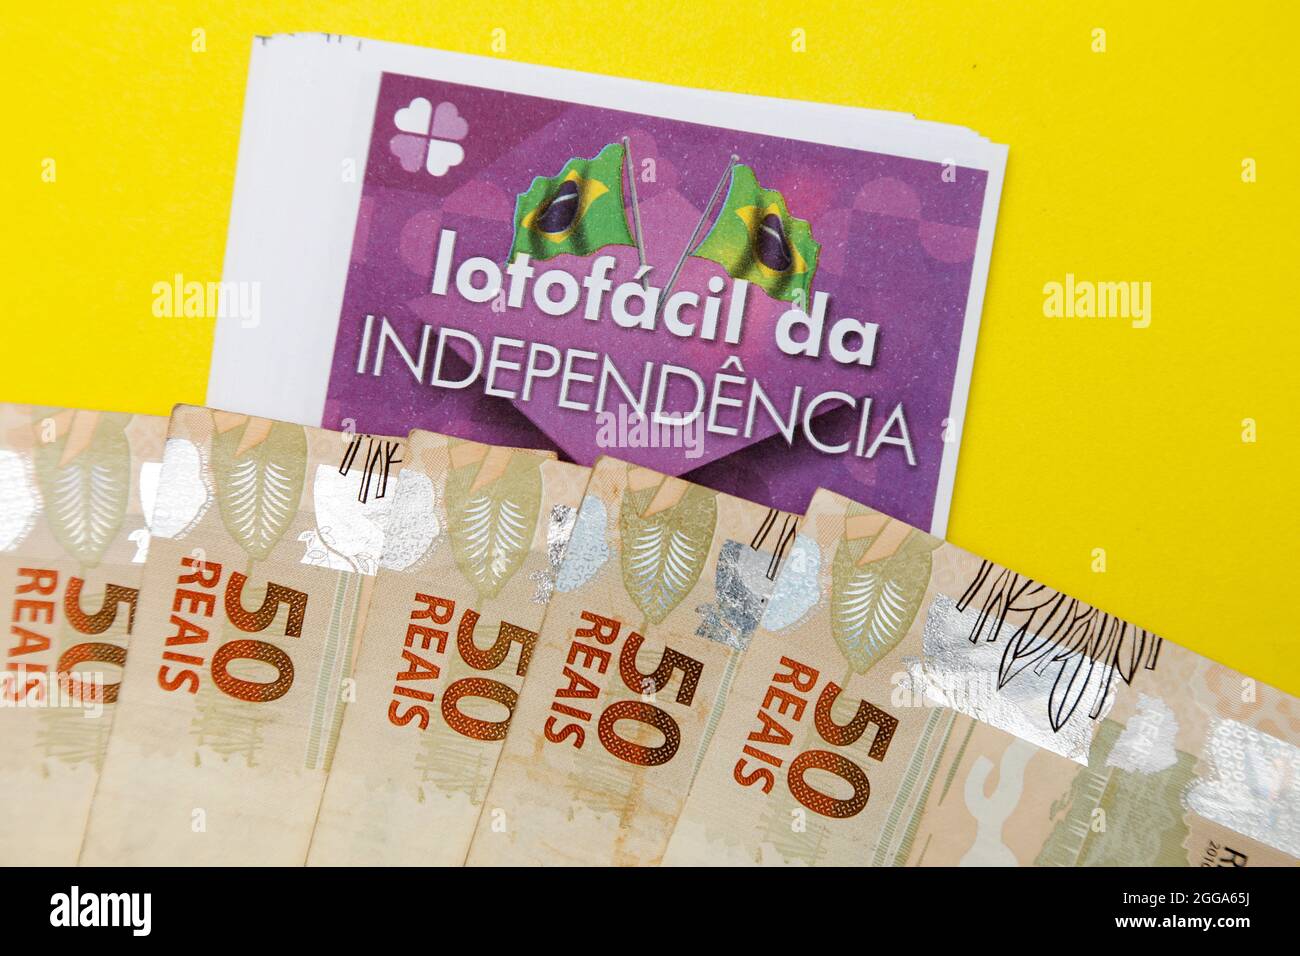 Minas Gerais, Brasile - 19 agosto 2021: Biglietto della lotteria Caixa Lotofacil da Independencia e contanti Foto Stock